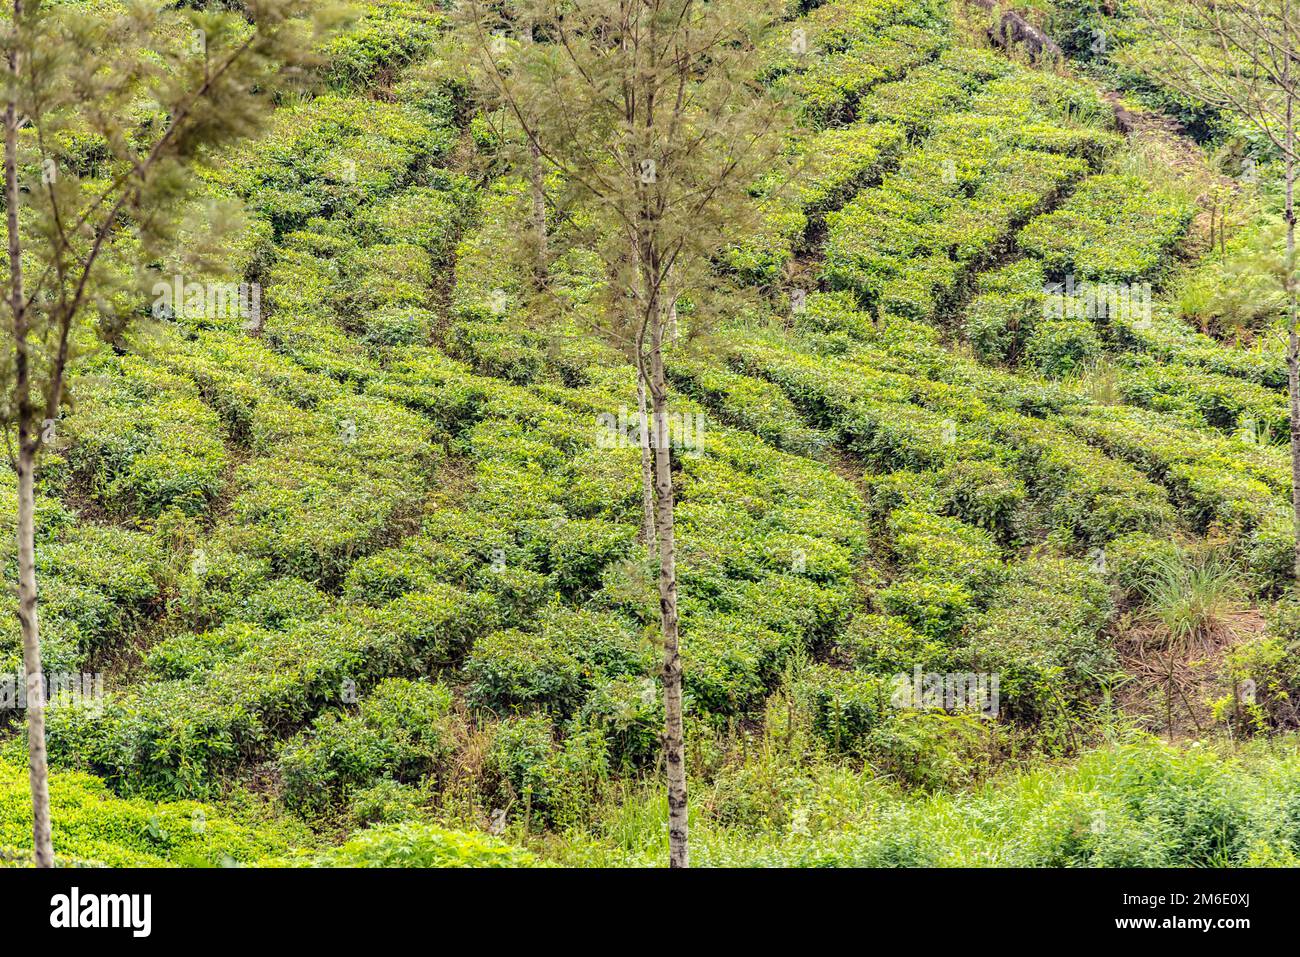 Haputale, Sri Lanka - 23 novembre 2019 : usine de thé dans une plantation de thé près de Haputale. Sri Lanka. Banque D'Images